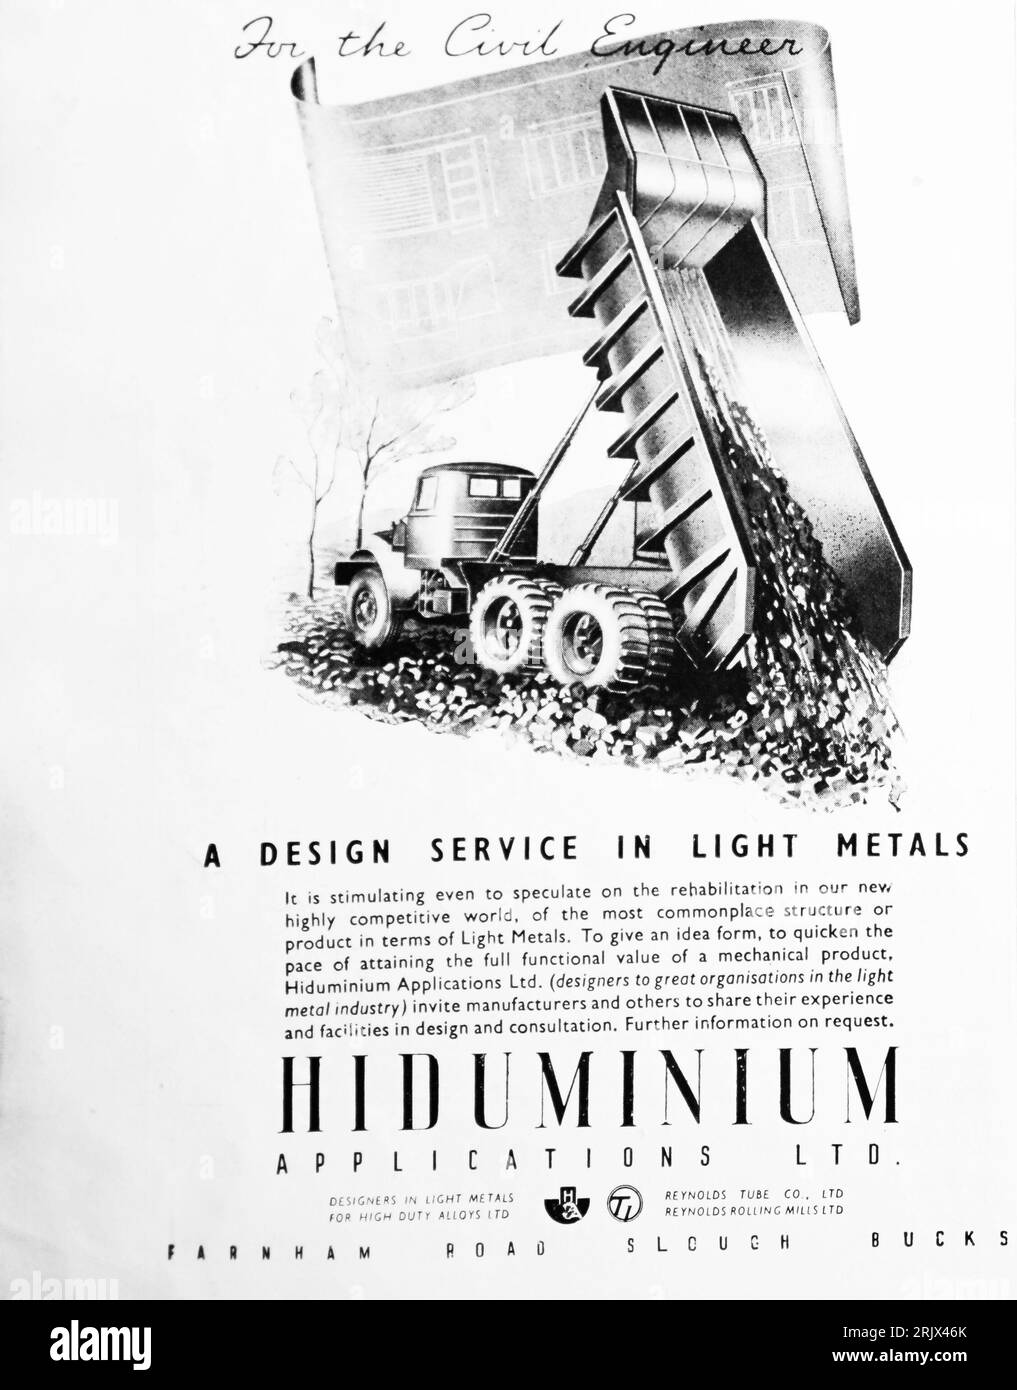 Eine Werbung für Hidaluminium Applications Ltd. Aus dem Jahr 1945 Dieses Unternehmen war Teil von Reynolds Tube Co Ltd Reynolds war an der Herstellung von Fahrradrahmen sowie an der Entwicklung einzigartiger Stahllegierungen beteiligt. Hidaluminium-Legierungen sind eine Reihe hochfester Hochtemperatur-Aluminiumlegierungen, die ursprünglich von Rolls Royce für die Flugzeugproduktion entwickelt wurden. Stockfoto